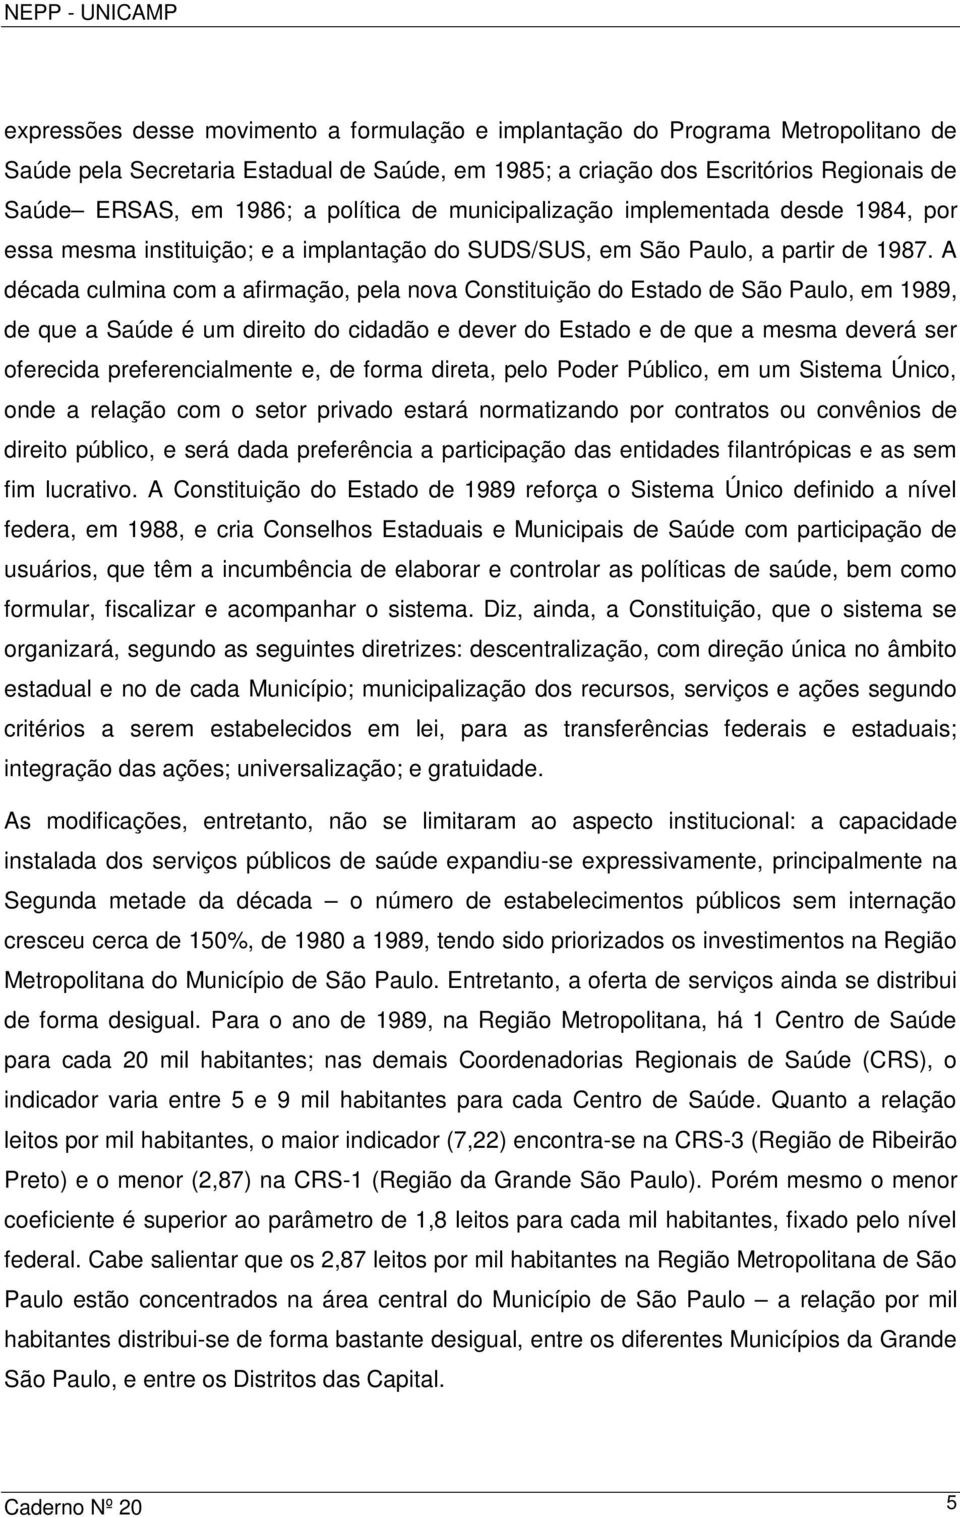 A década culmina com a afirmação, pela nova Constituição do Estado de São Paulo, em 1989, de que a Saúde é um direito do cidadão e dever do Estado e de que a mesma deverá ser oferecida